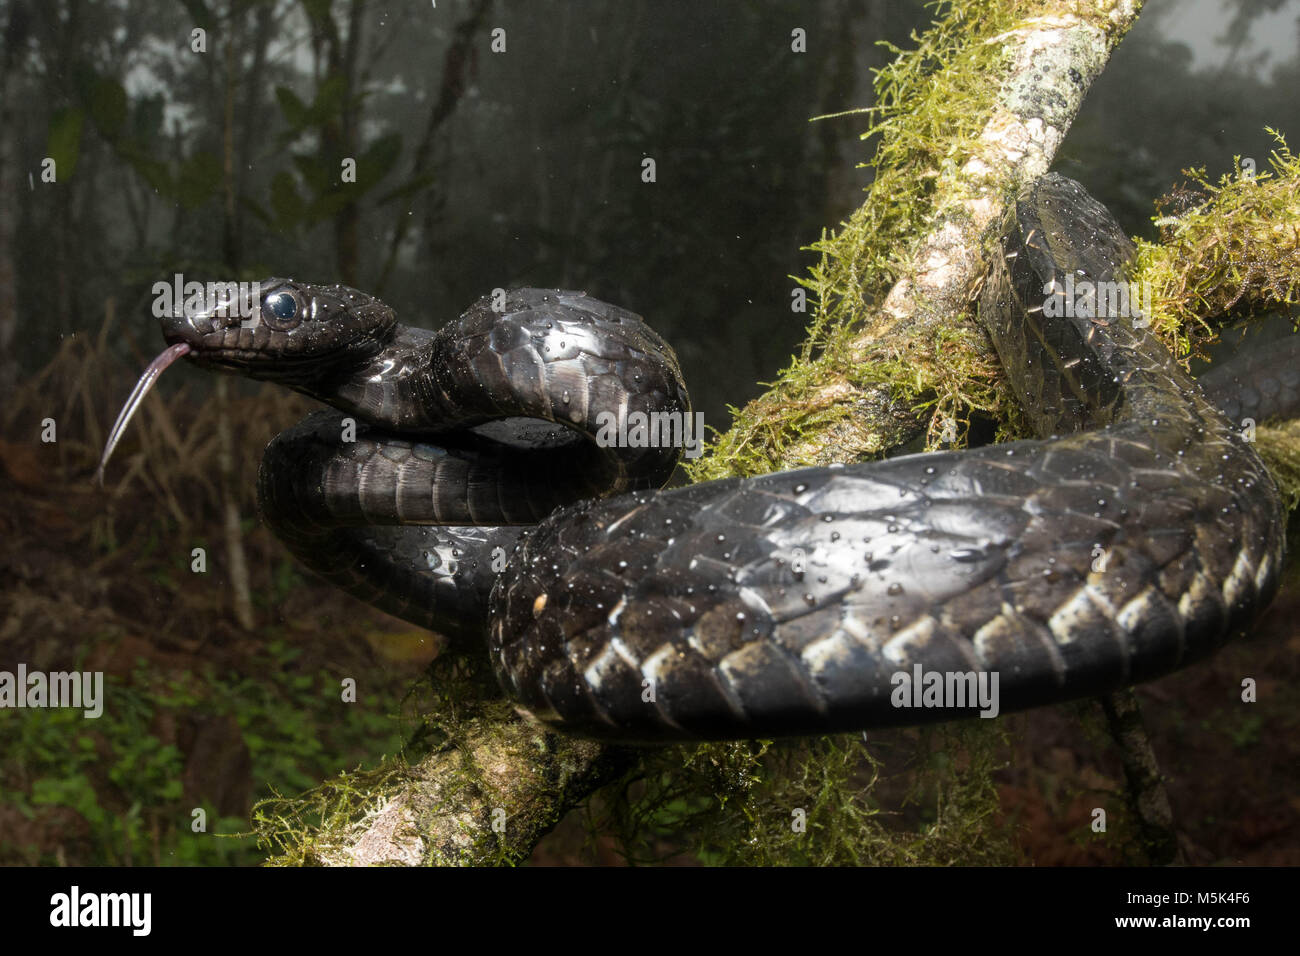 Un gran Sipo (Chironius grandisquamis) una especie de serpiente de América del Sur, está alerta y a la defensiva. Foto de stock